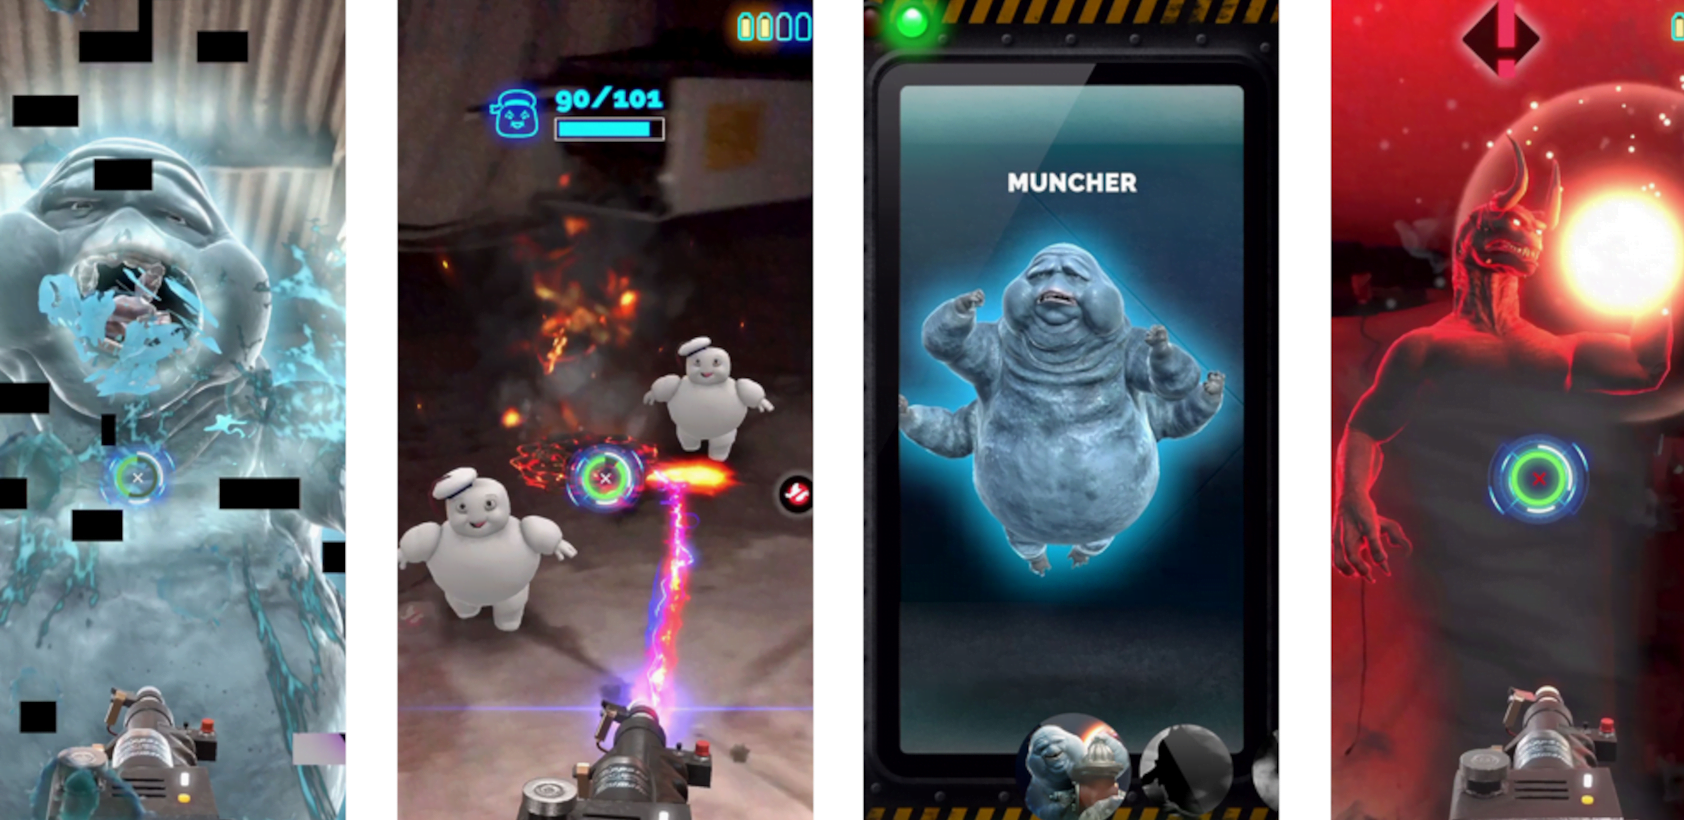 Ghostbusters AR bringt schleimige Geisterjagd aufs Smartphone